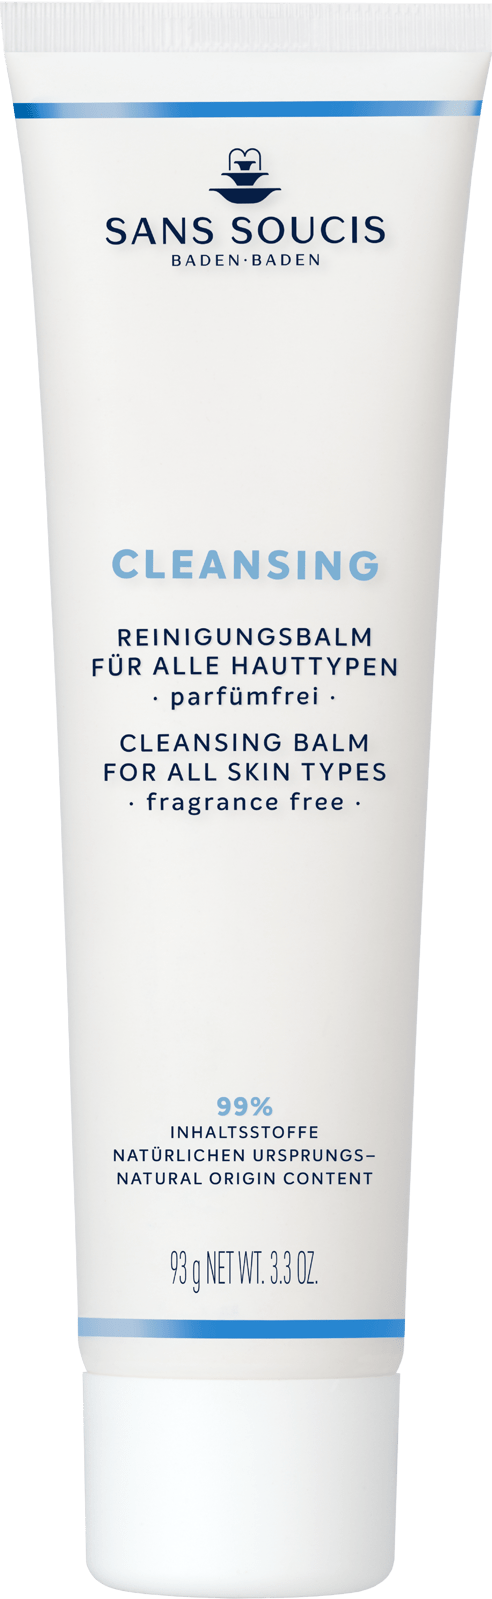 CLEANSING • REINIGUNGSBALM • PARFÜMFREI